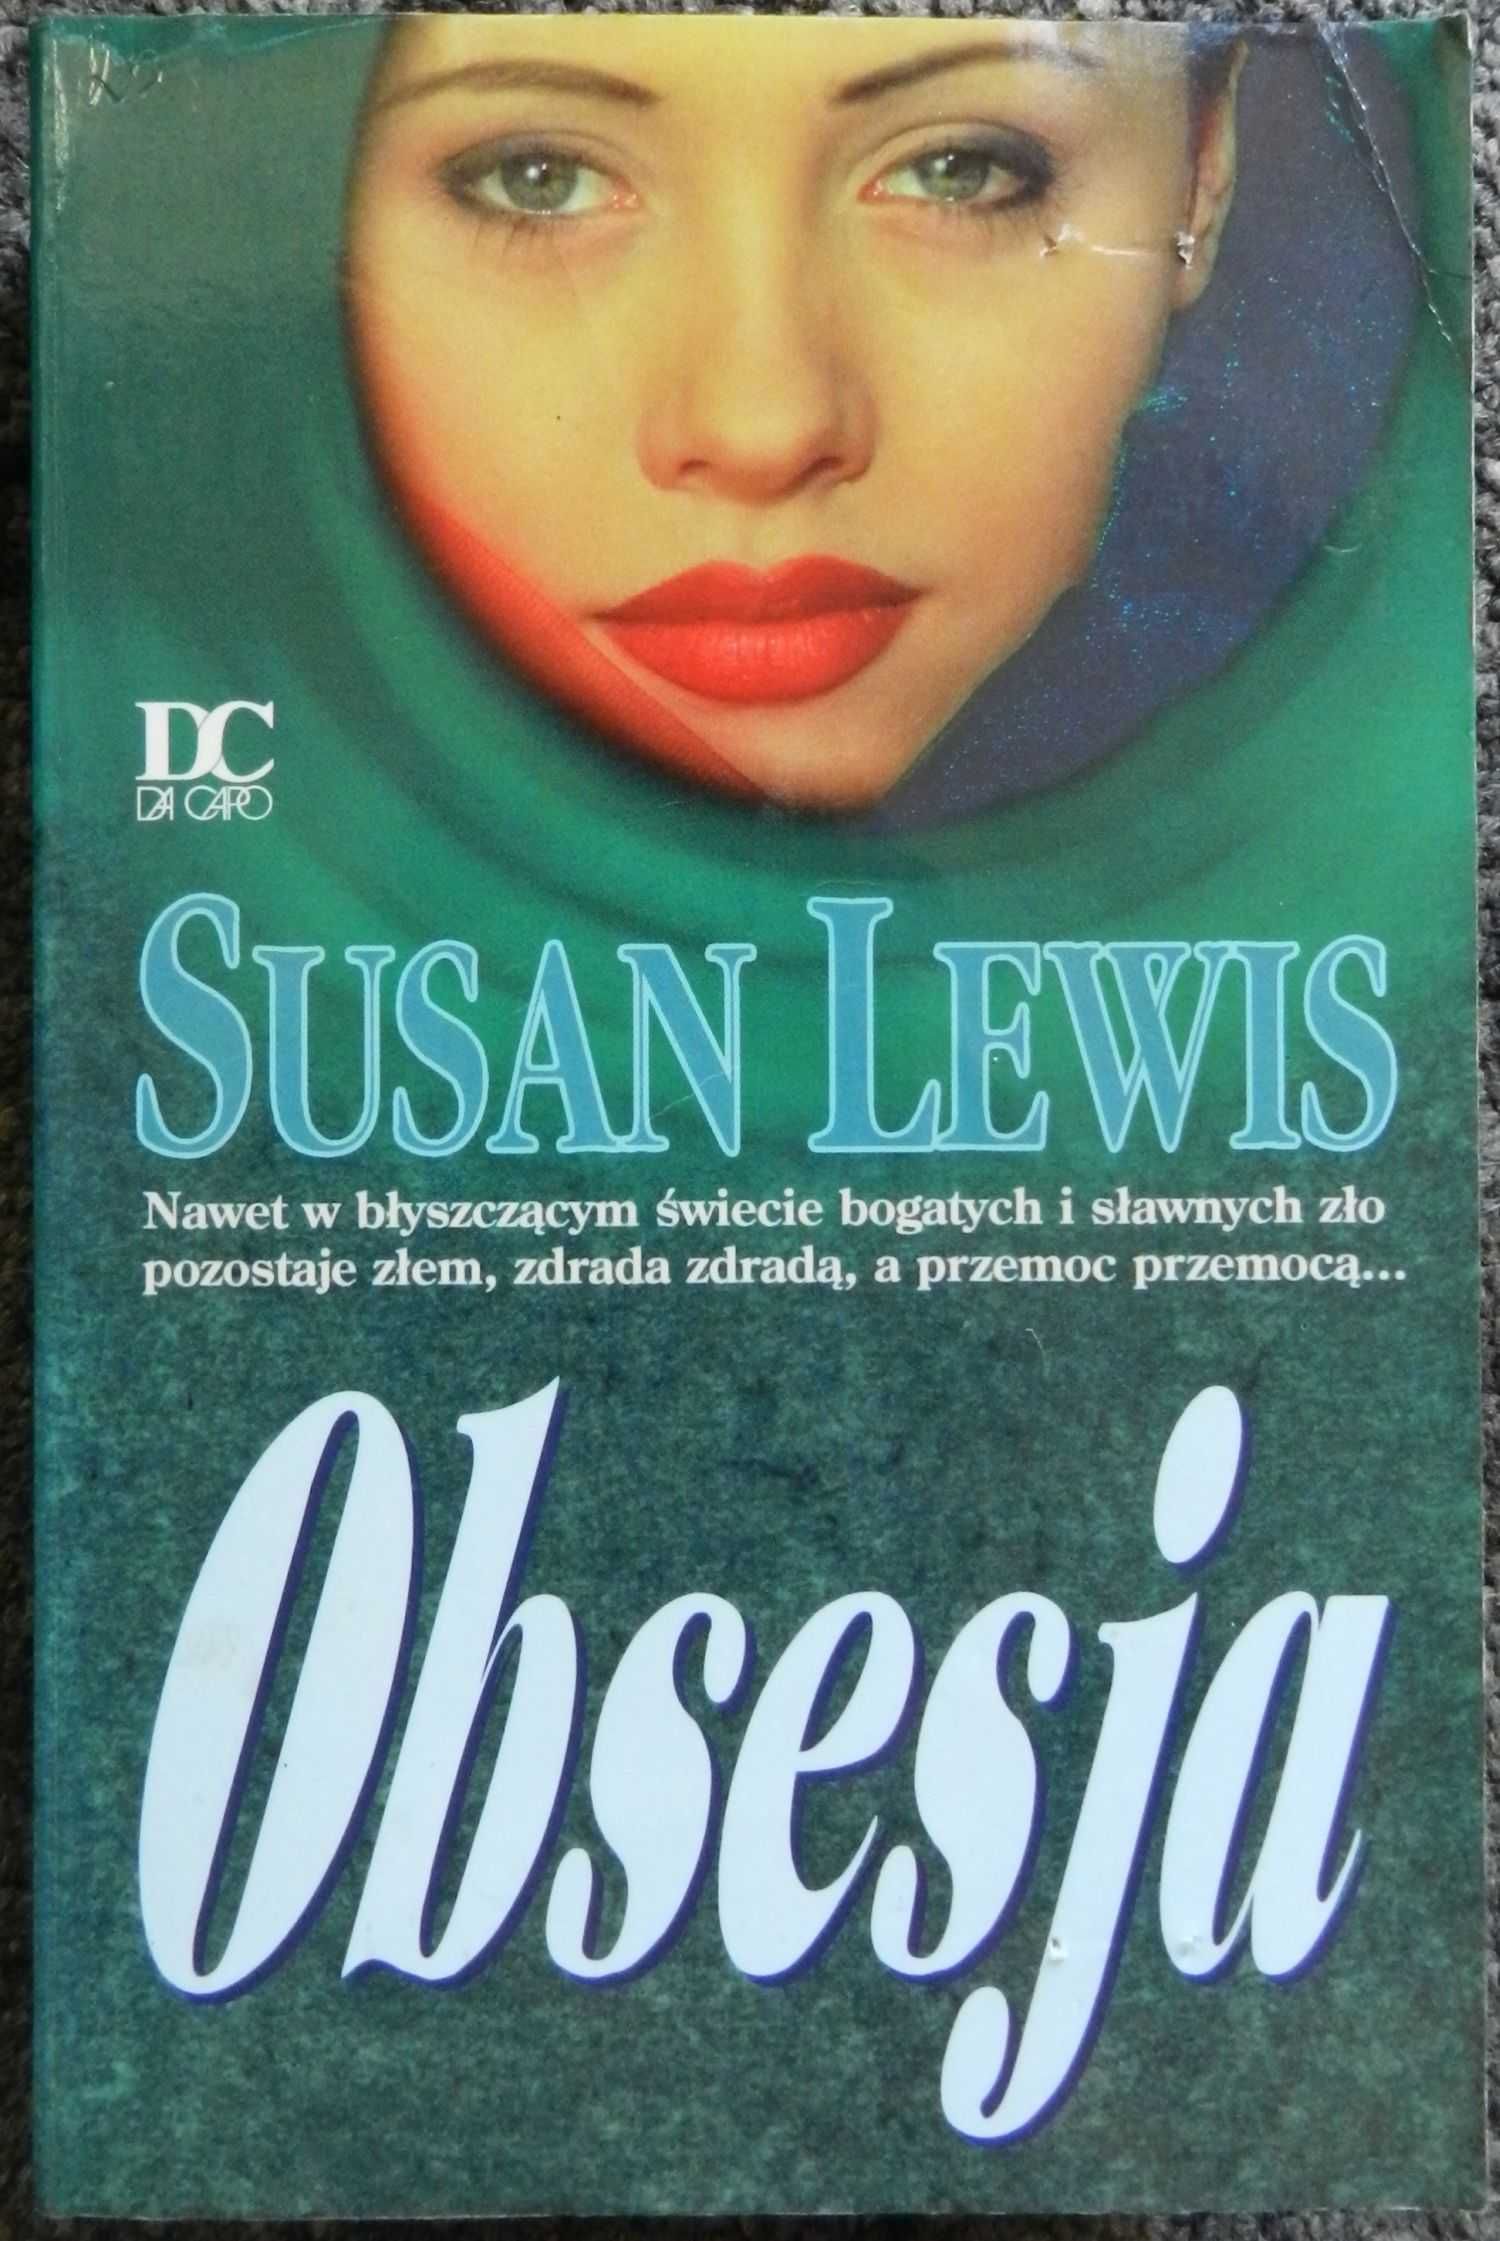 Lewis Susan - Obsesja, romans powieść obyczajowa